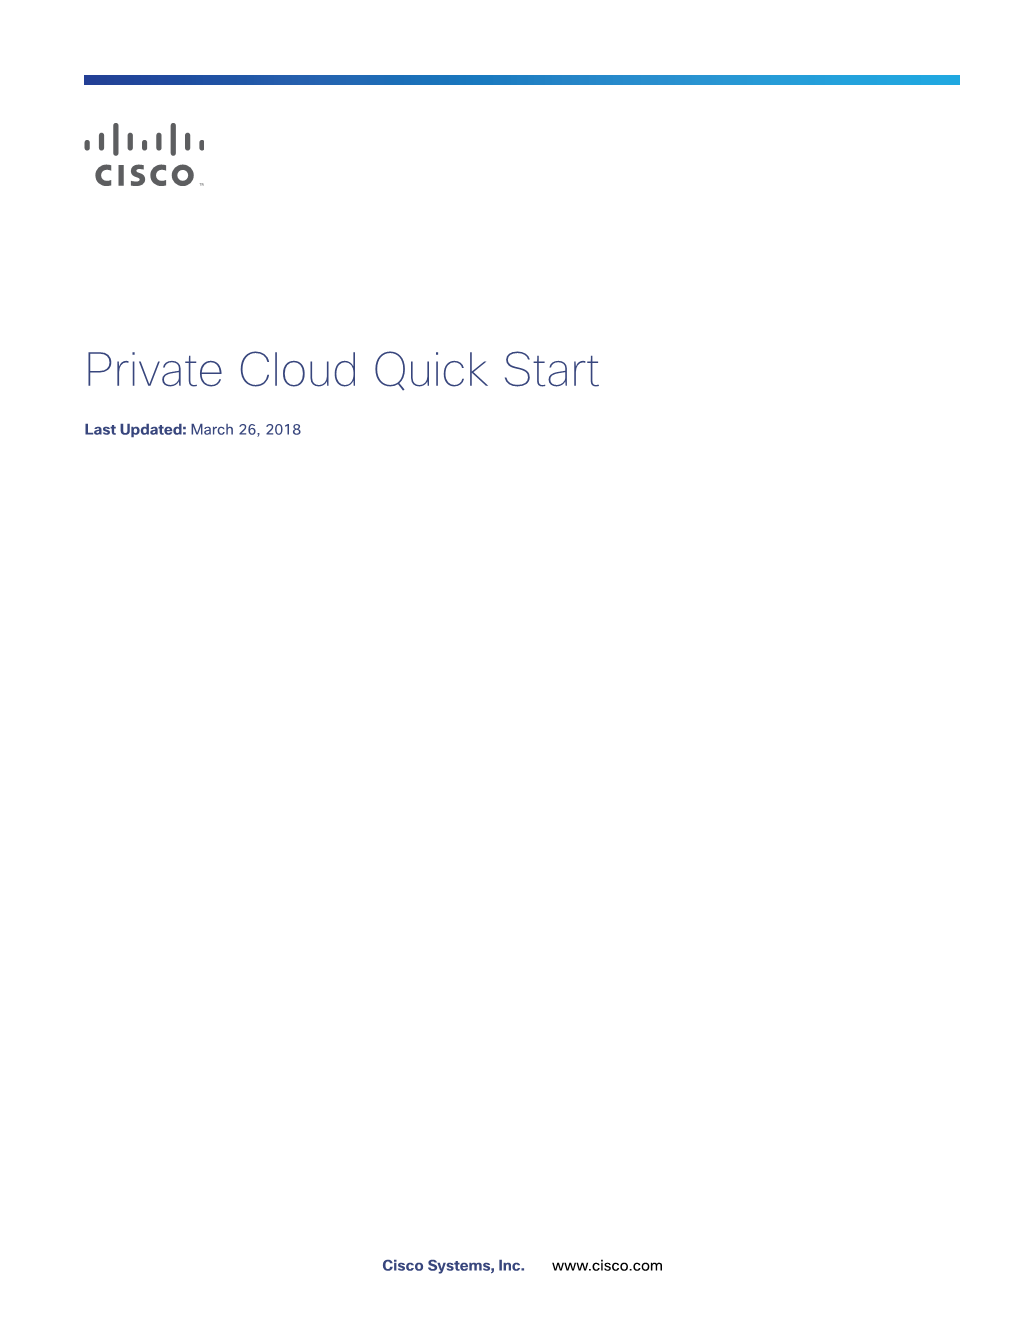 Fireamp Private Cloud Quick Start Guide.Book